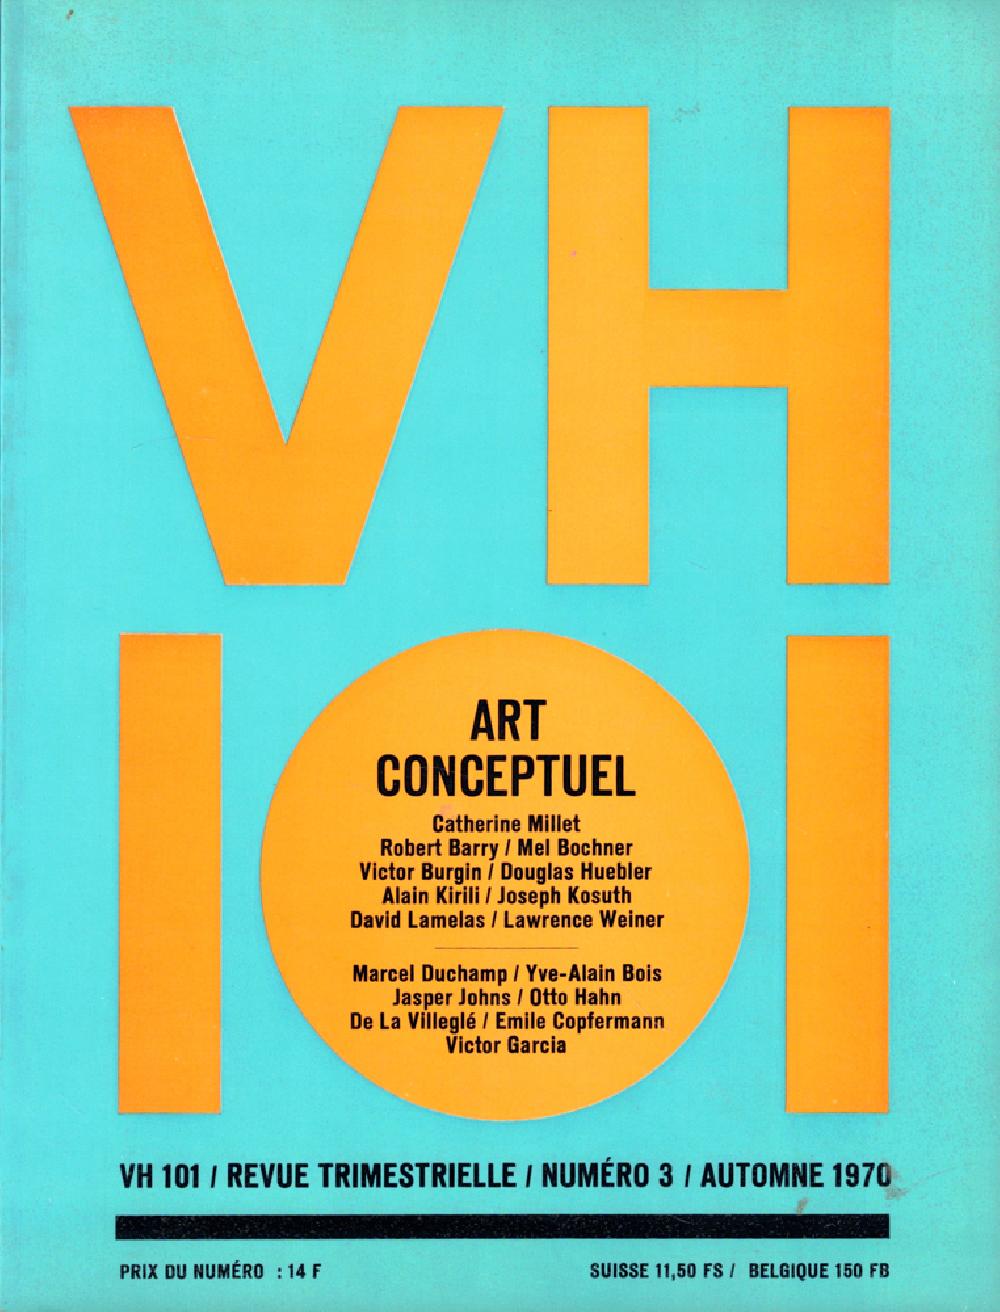 VH101 numéro 3 - ART CONCEPTUEL 